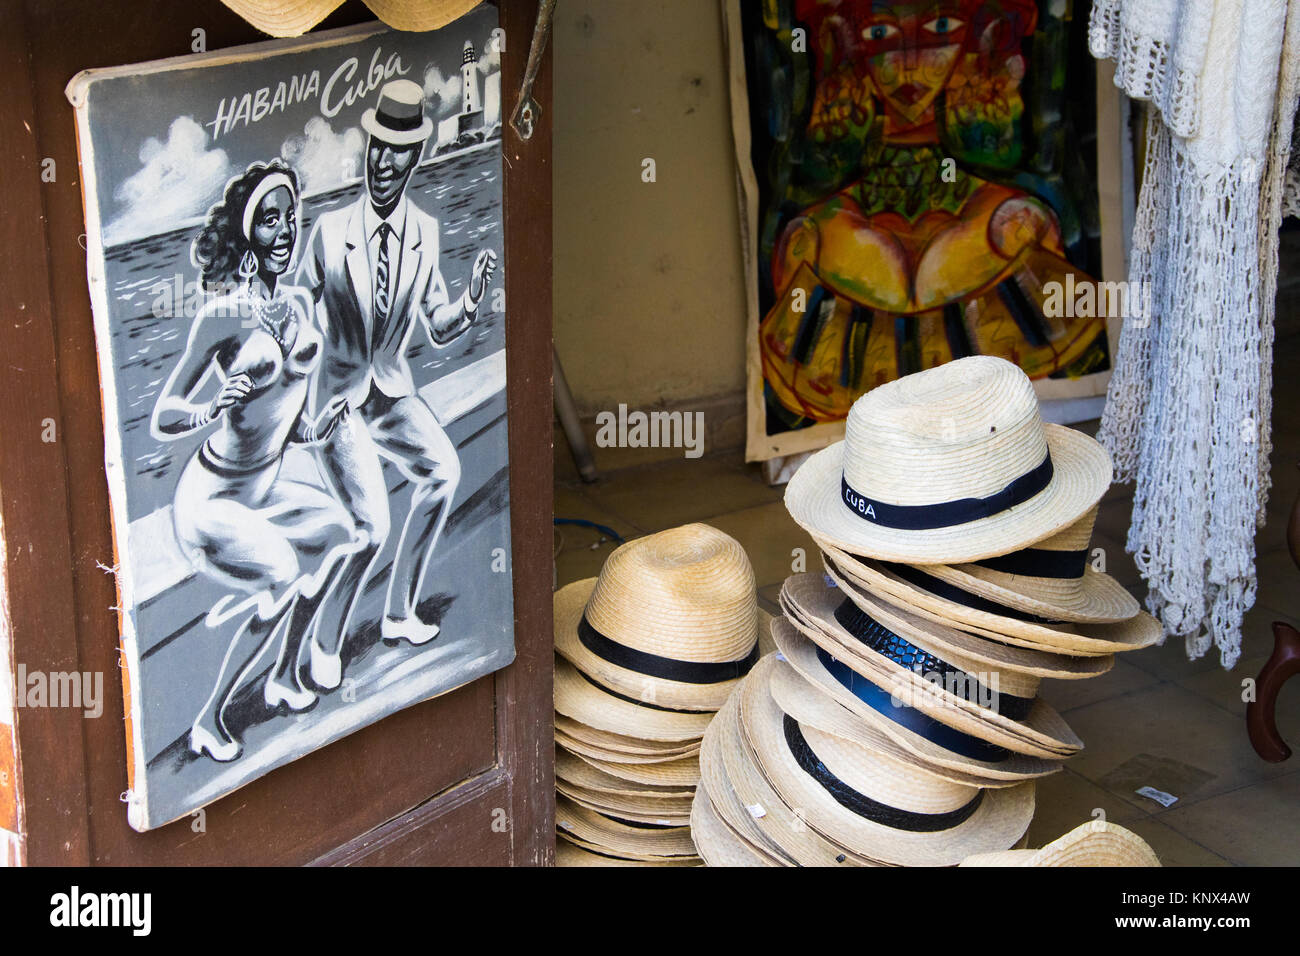 Chapeaux de souvenirs dans un magasin à La Havane, Cuba Banque D'Images